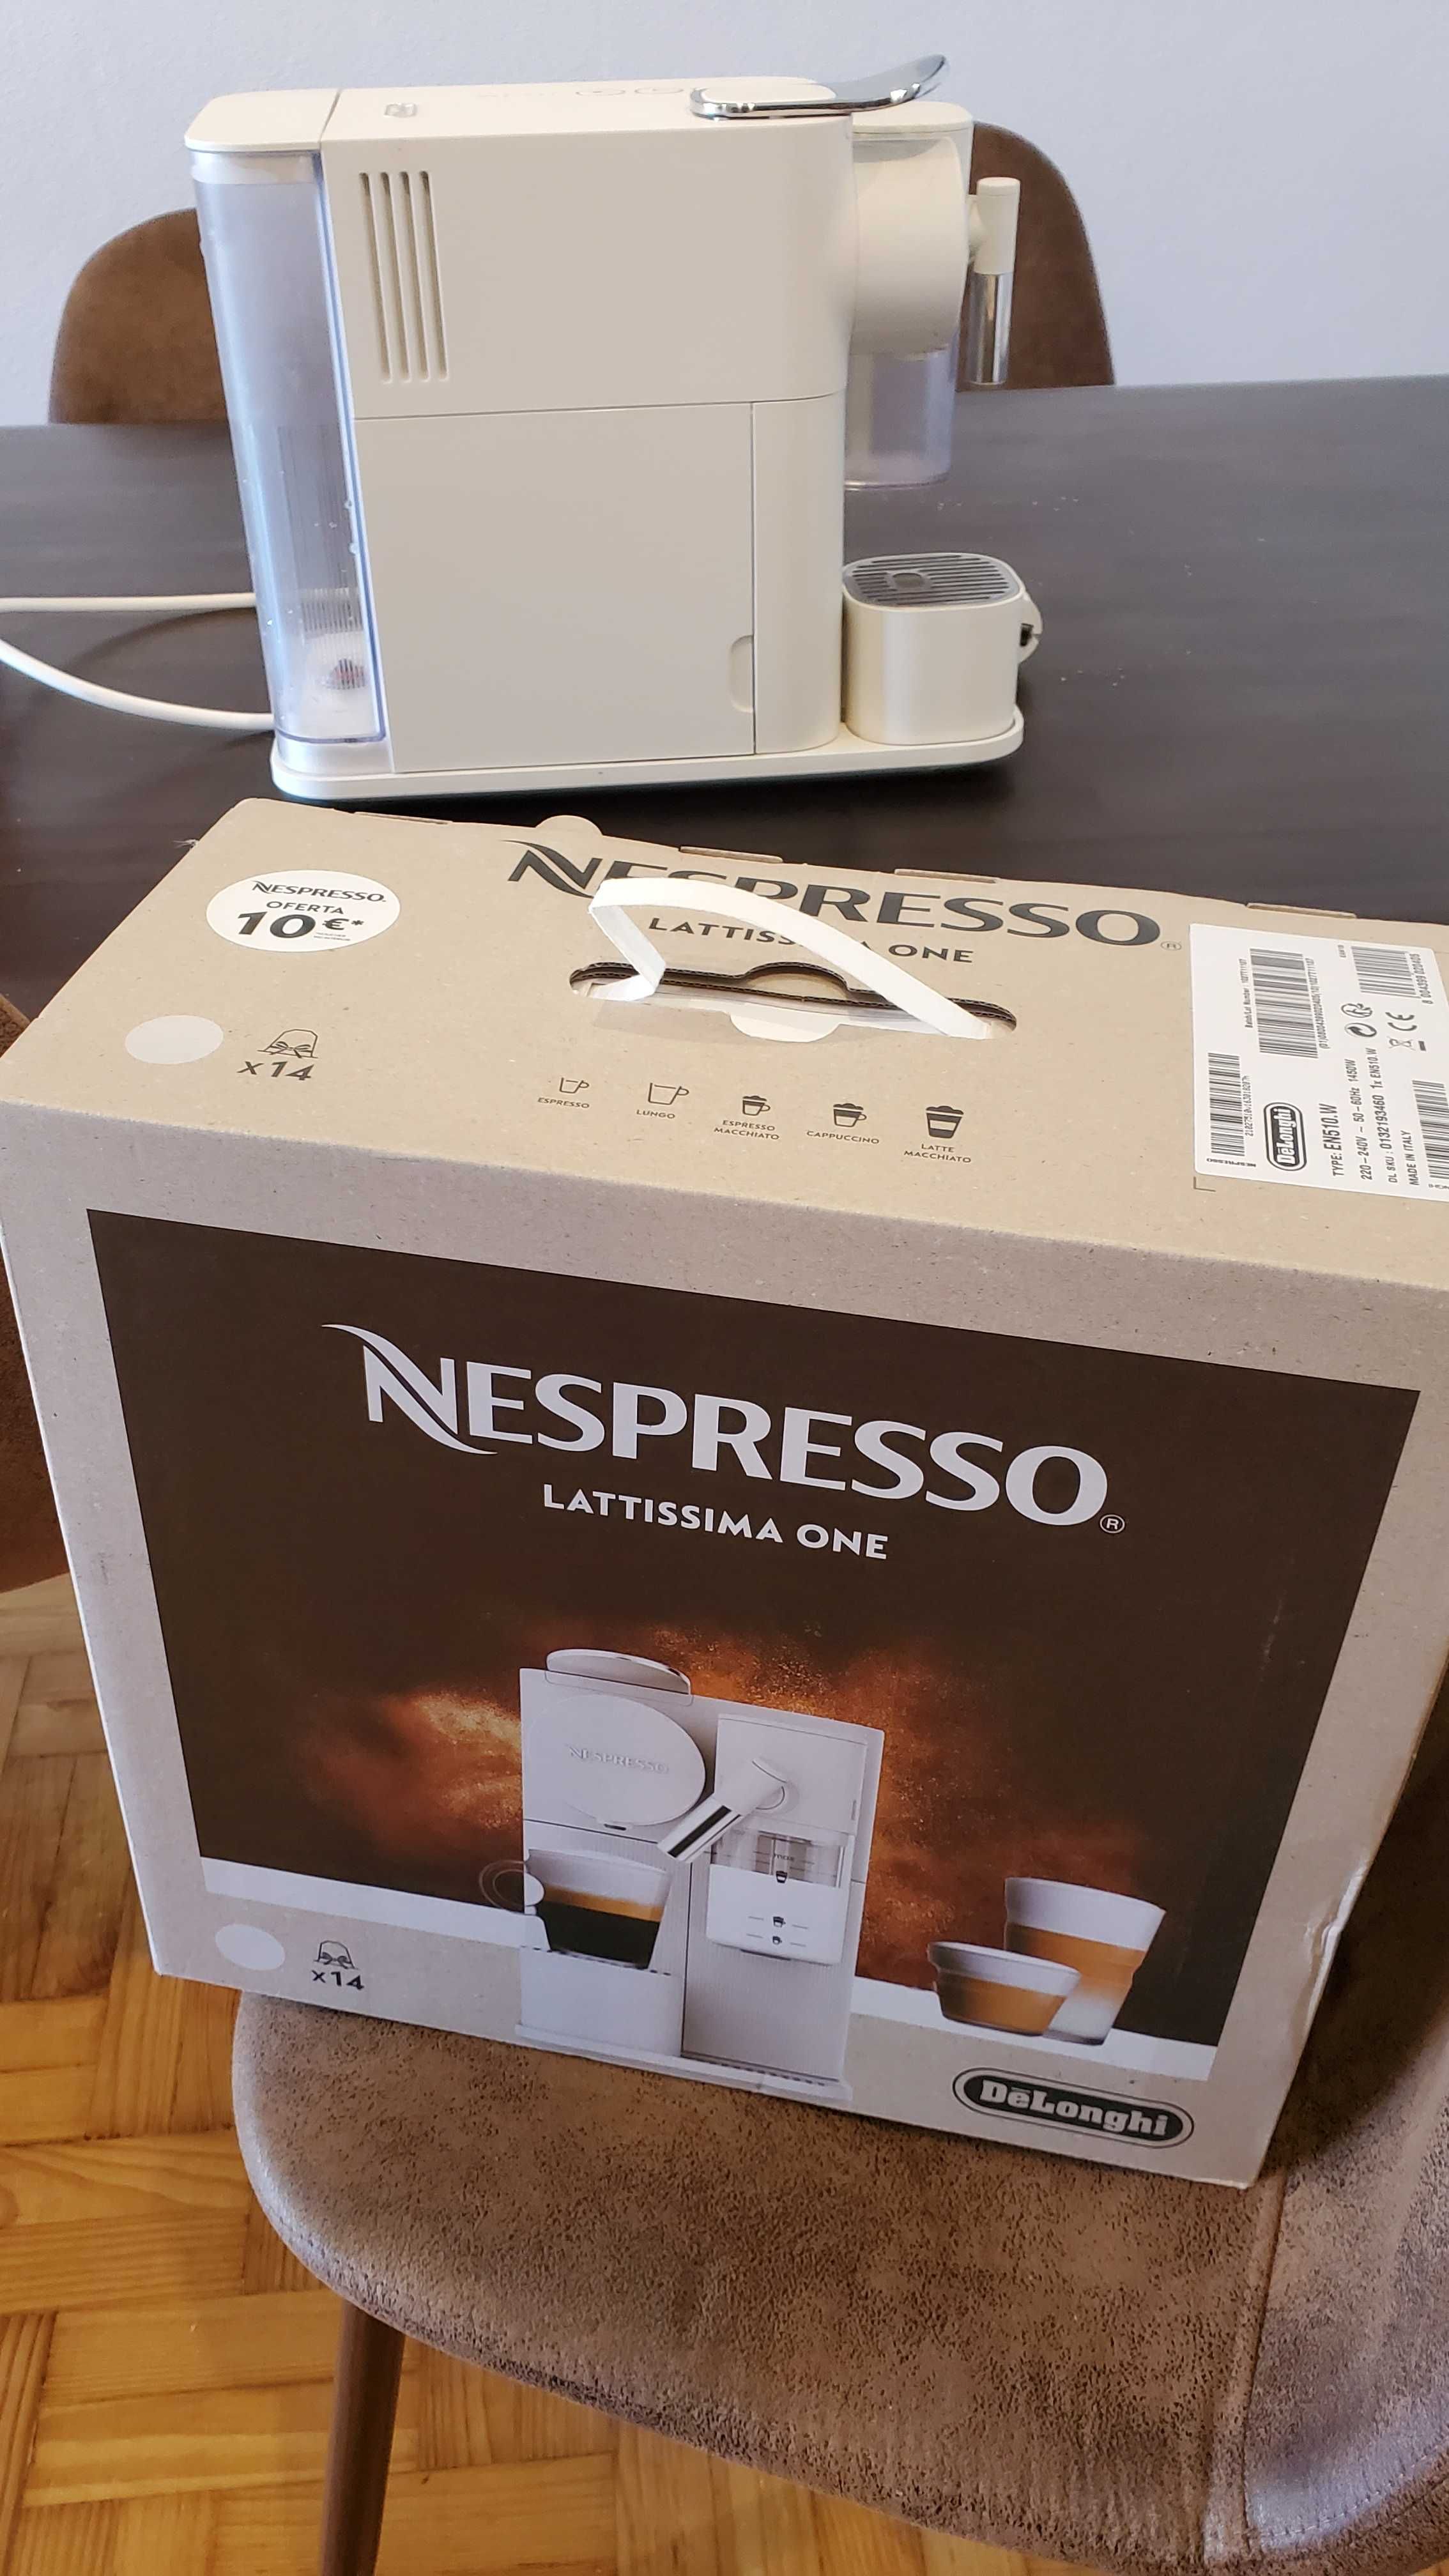 Nespresso altíssima one